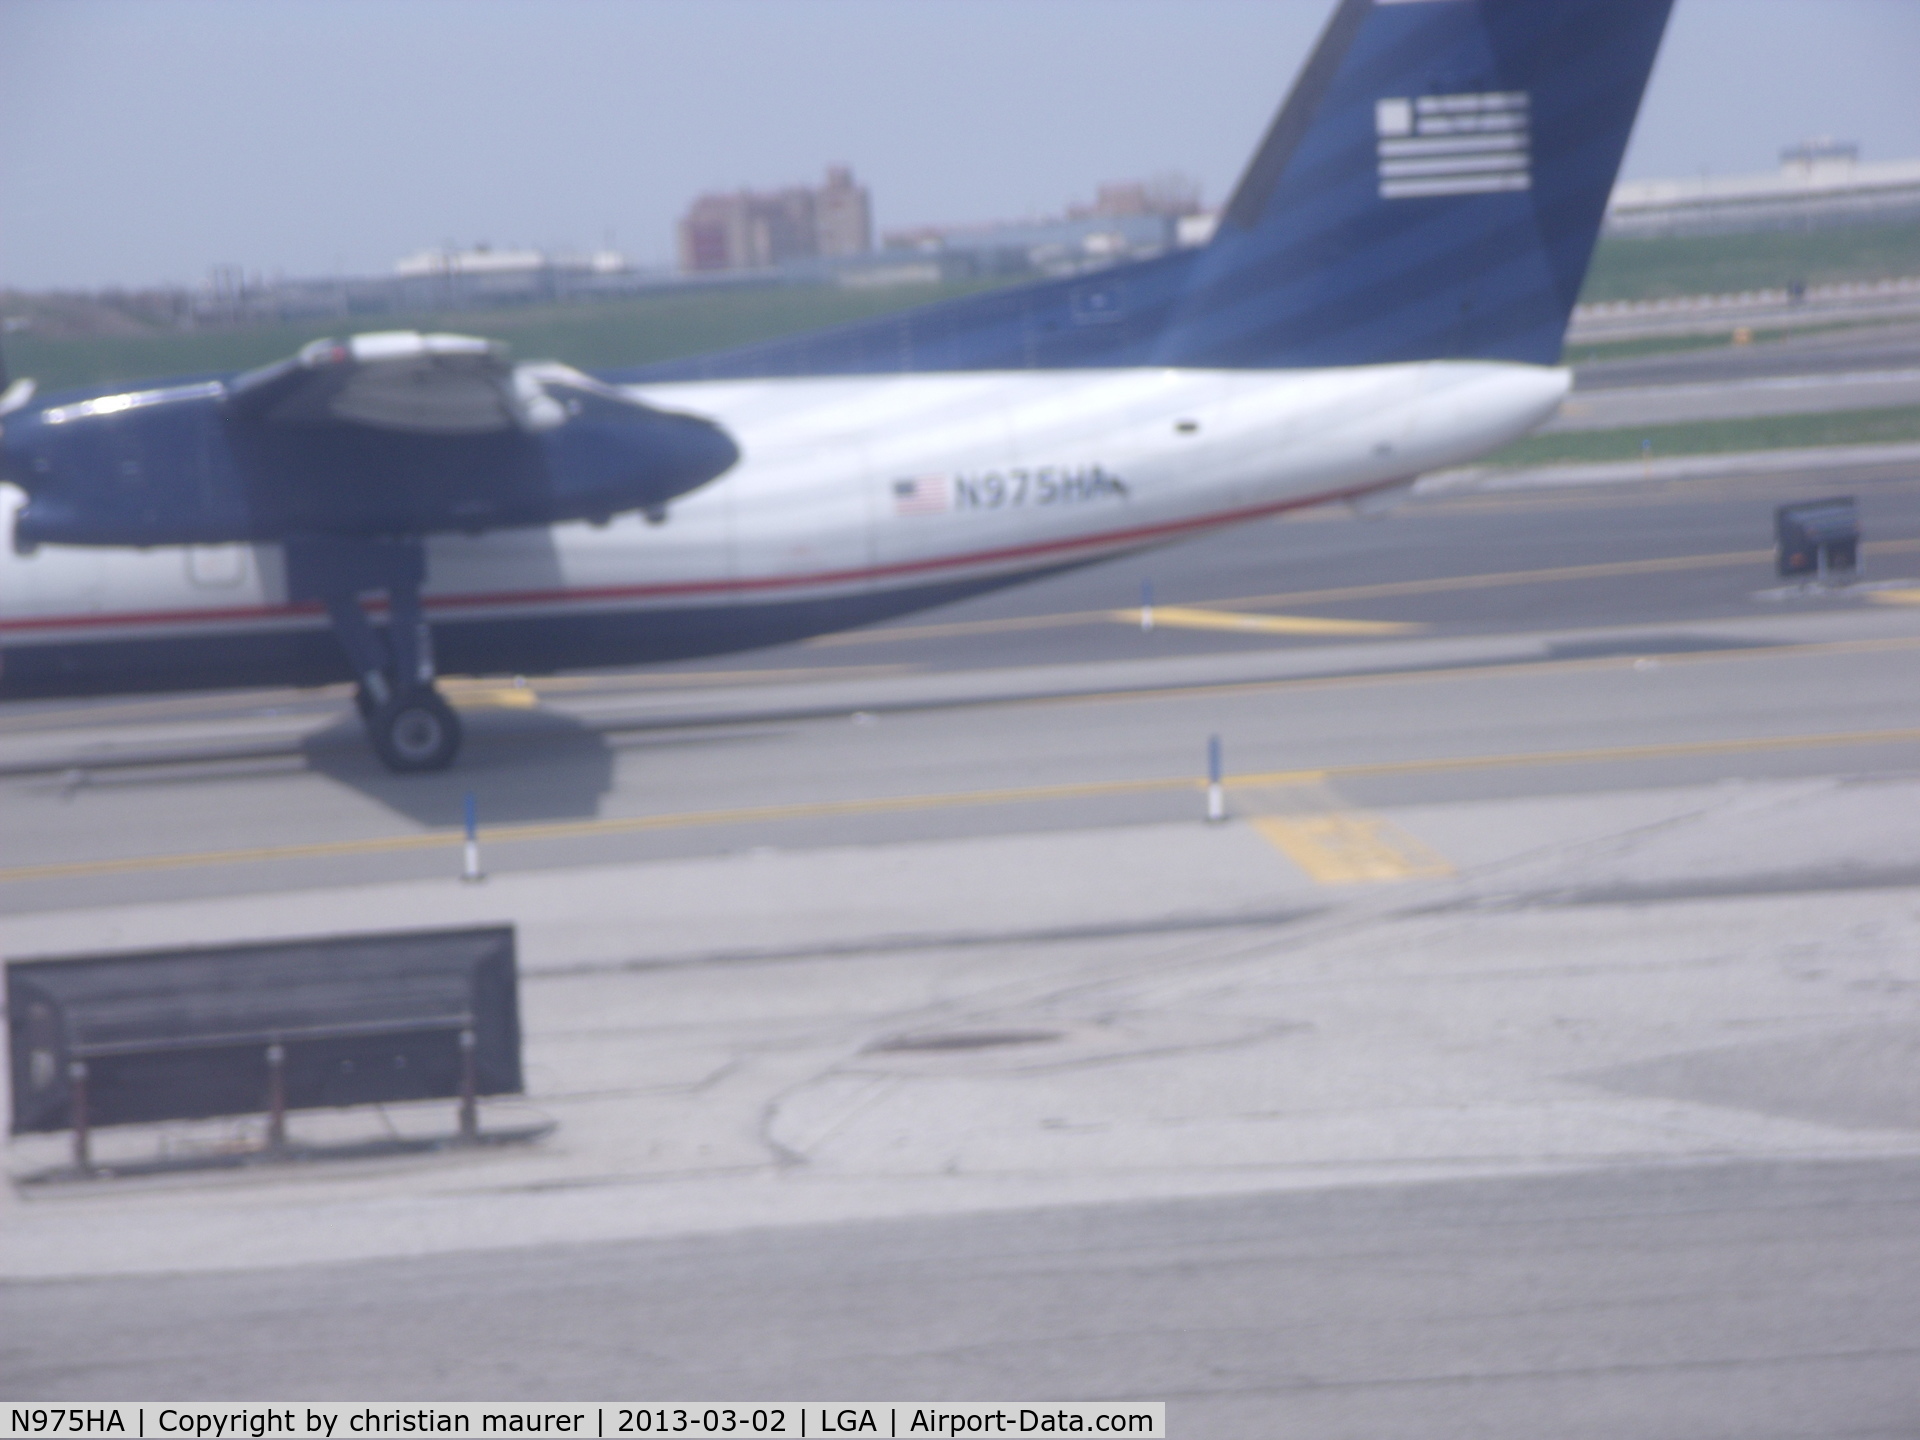 N975HA, Boeing DHC-8-102 C/N 176, US AIRWAYS EXPRESS DASH-8